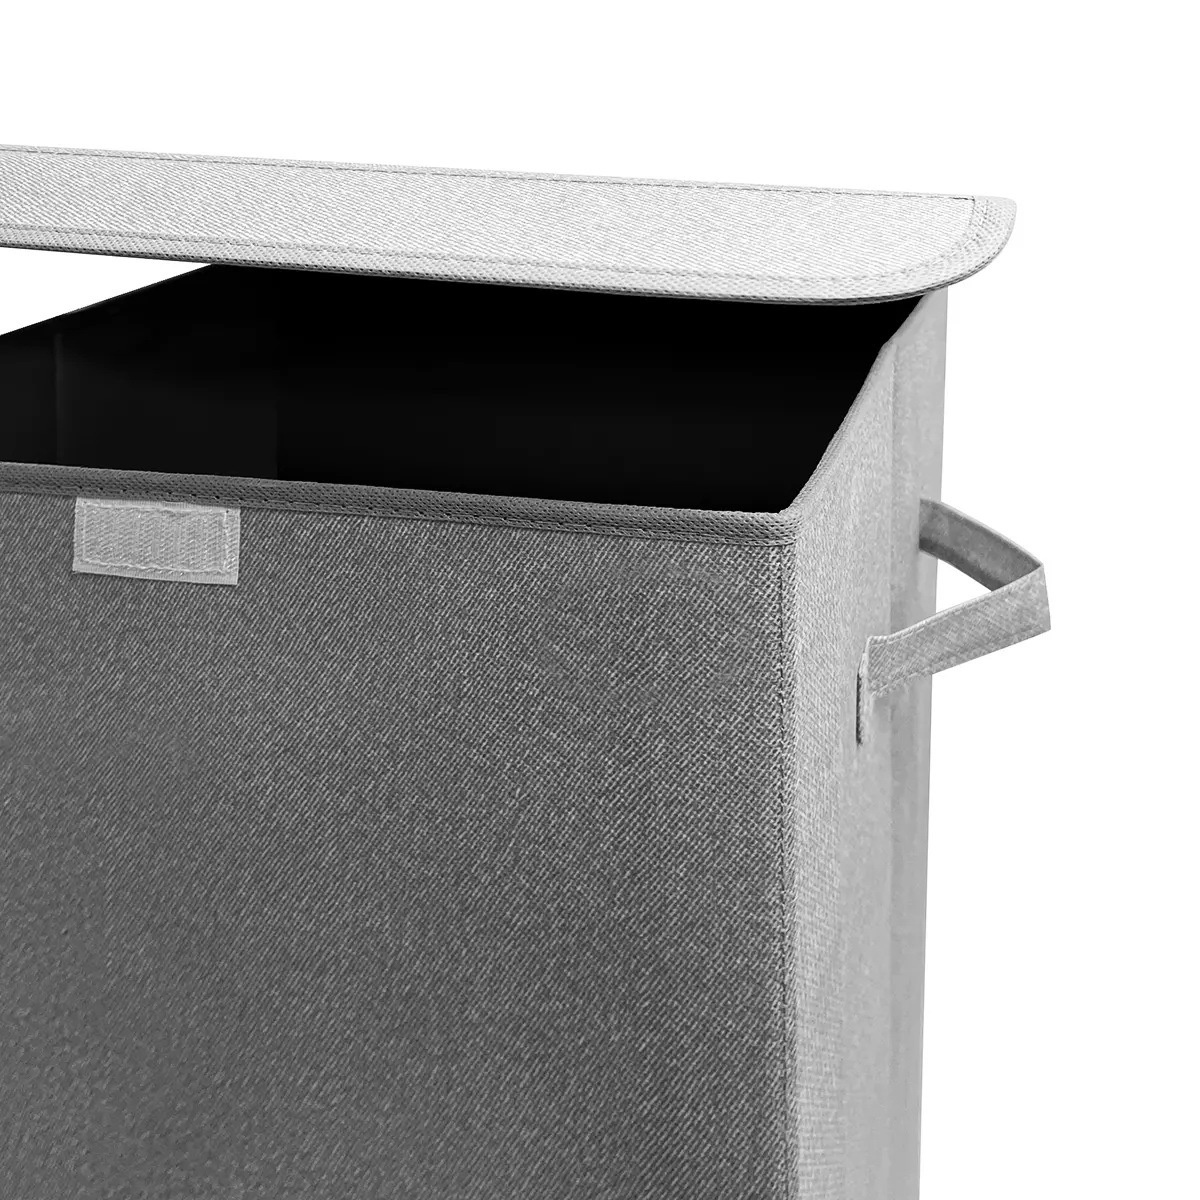 Ящик для хранения с крышкой MVM тканевый серый 580x340x340 TH-02 GRAY